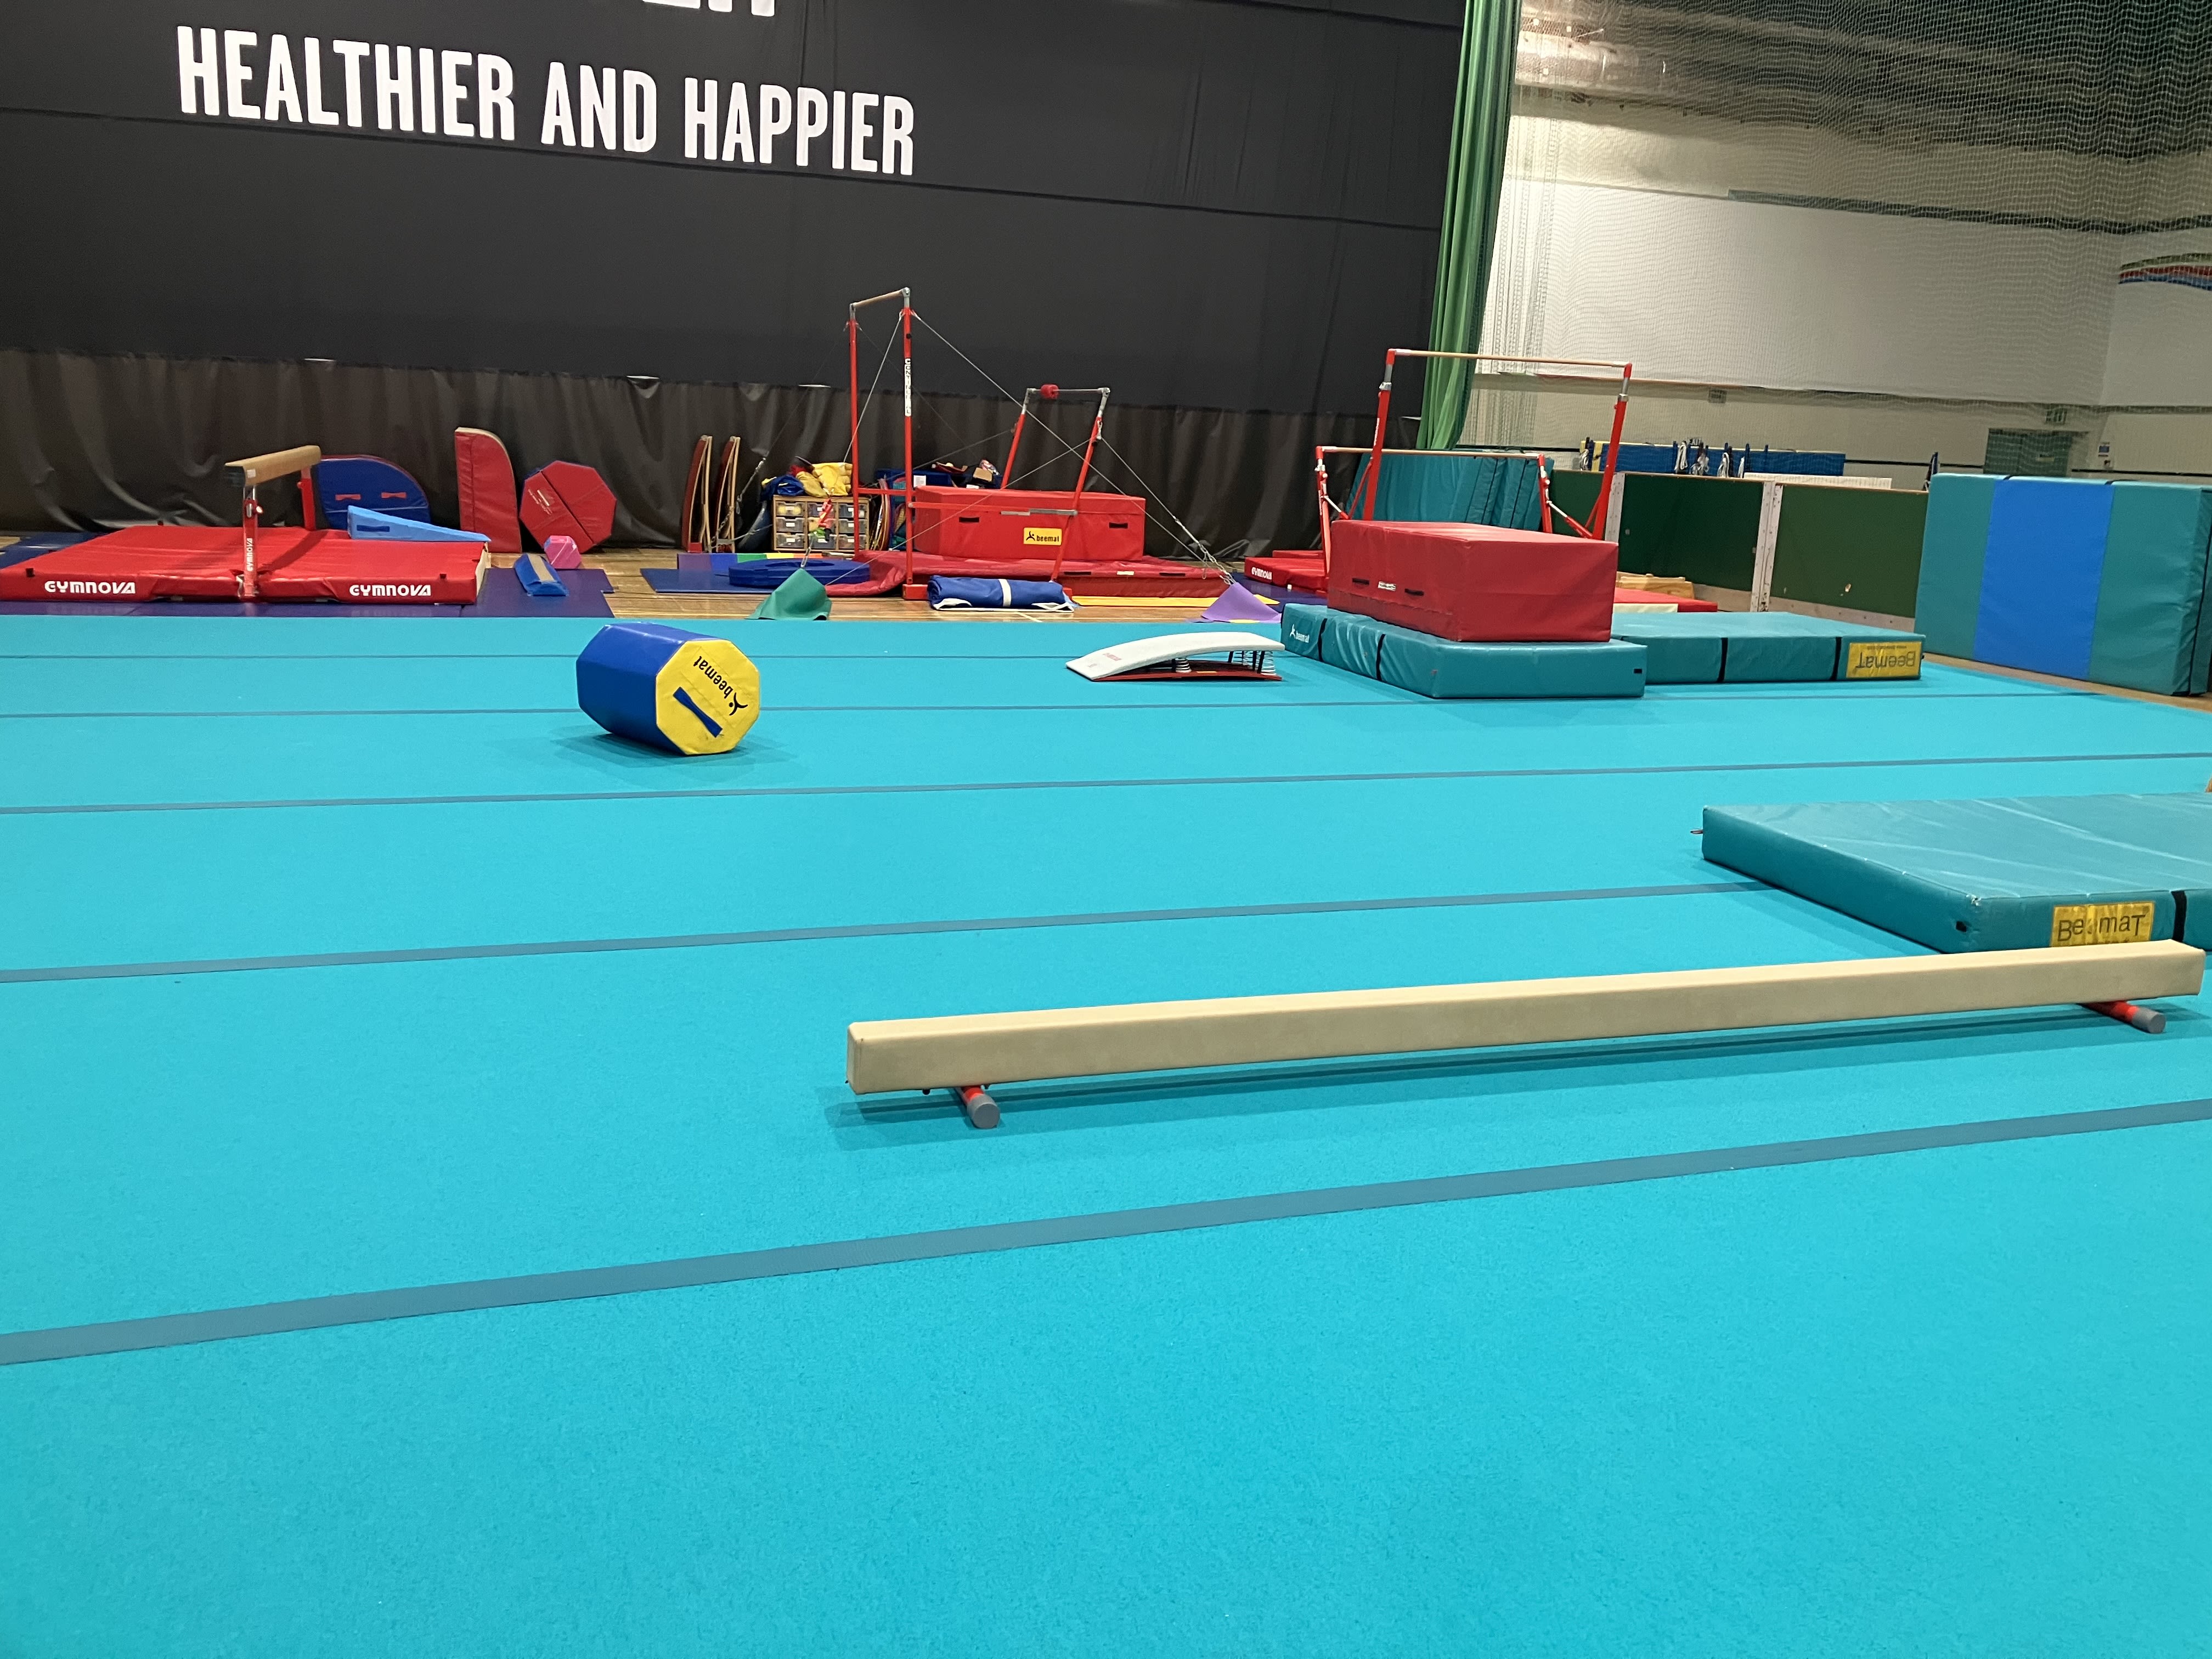 An image of the gymnastic setup